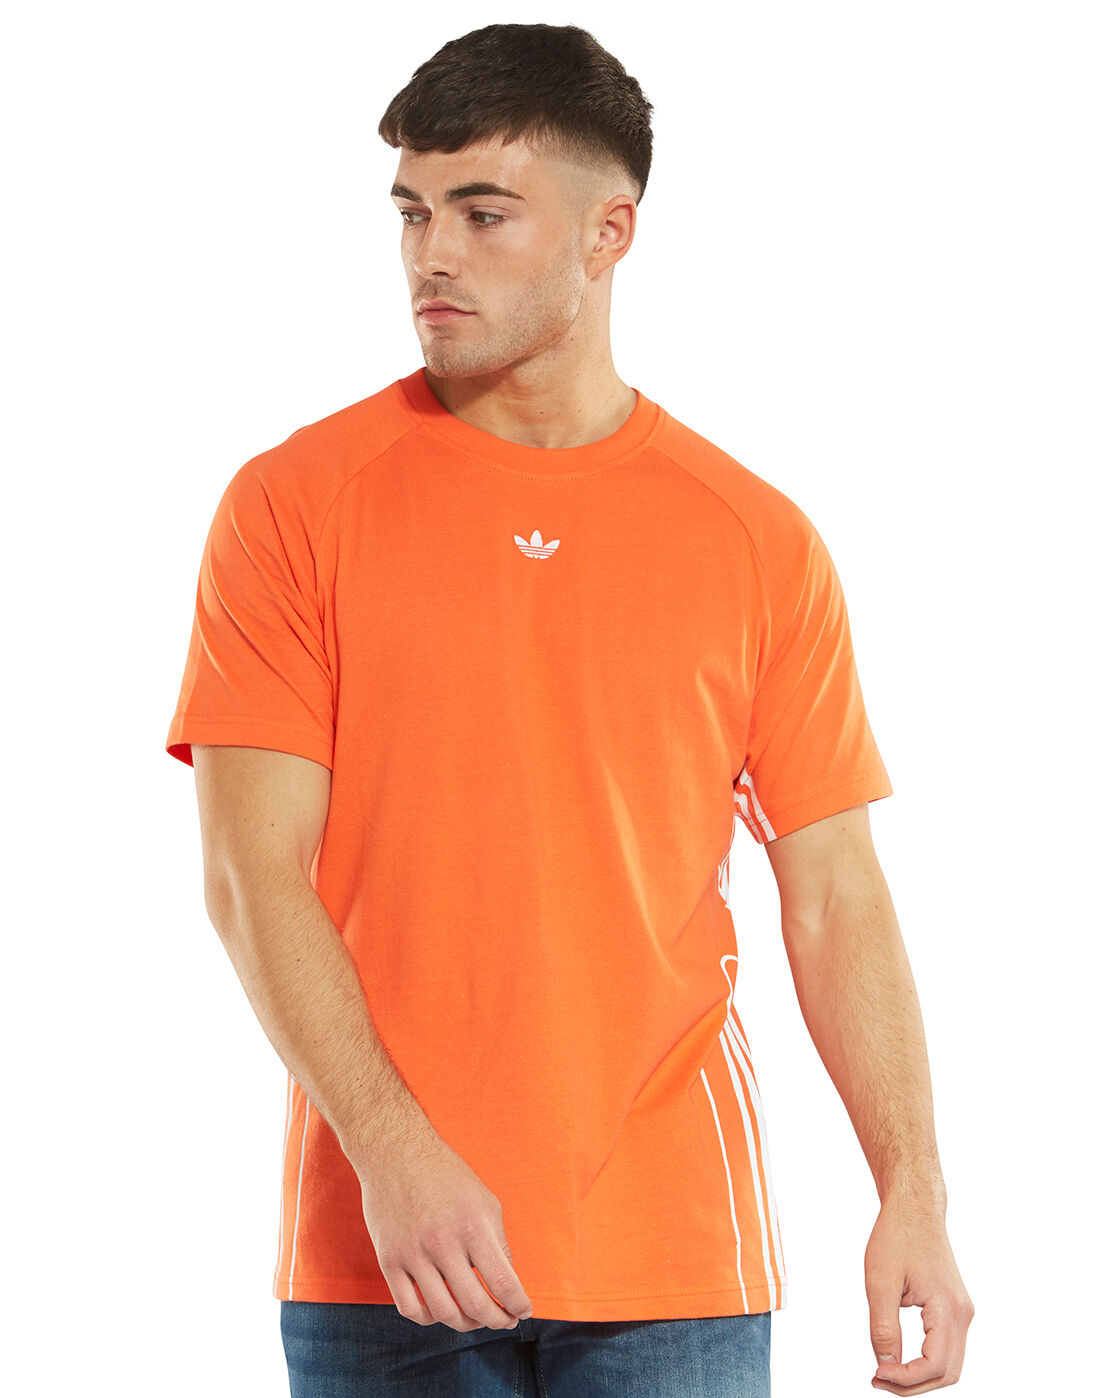 Men's Orange adidas Originals 